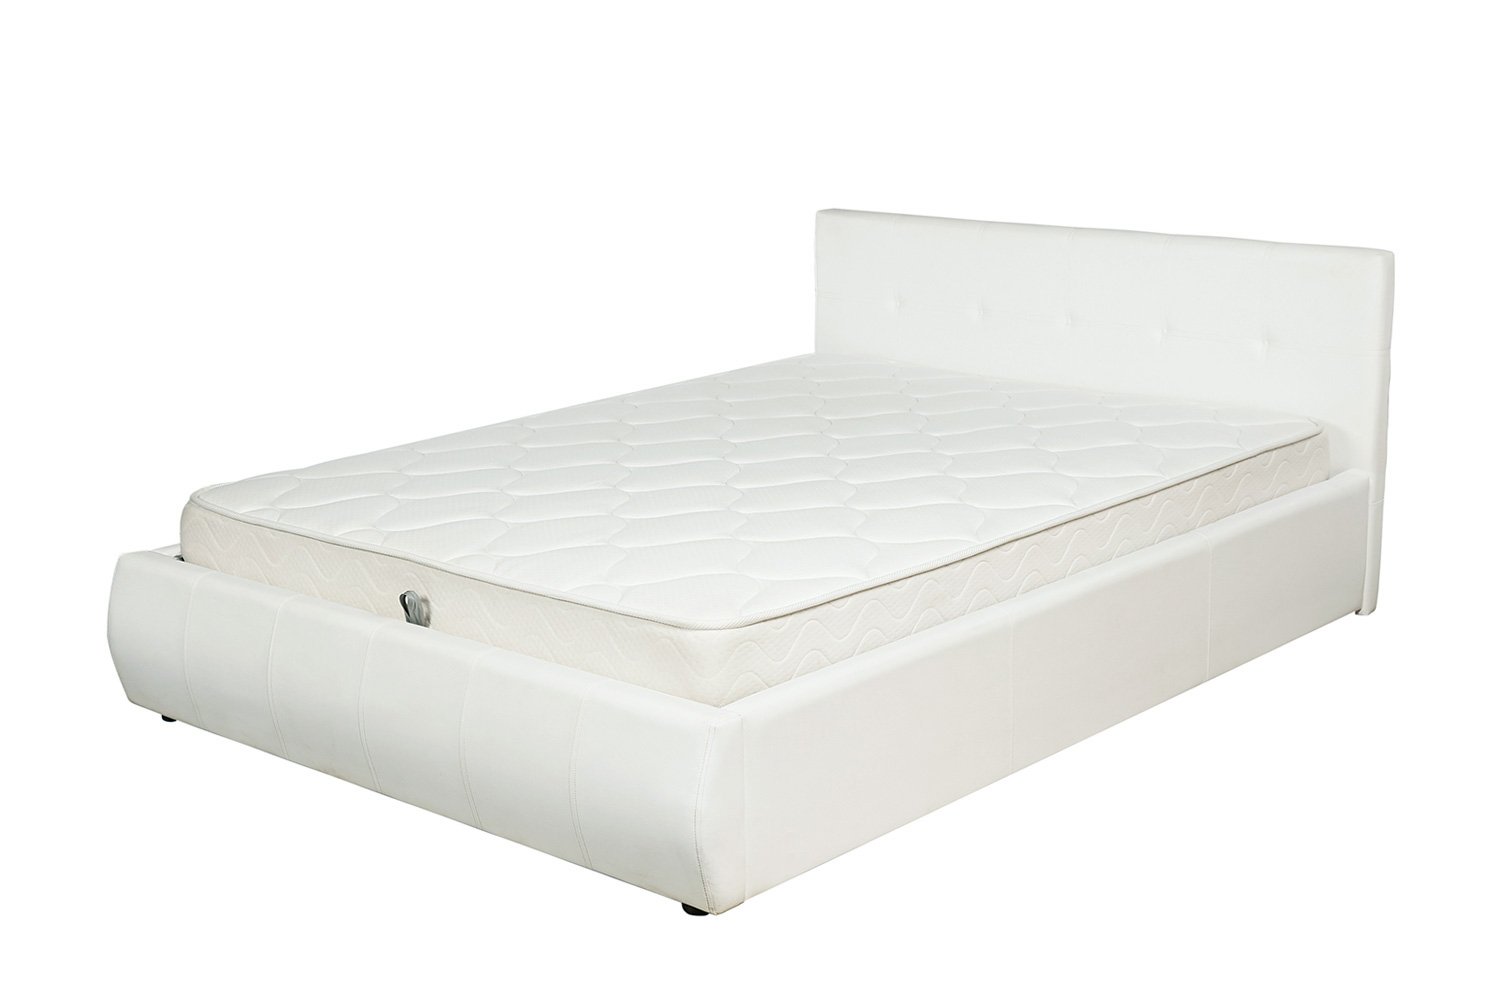 Кровать 160х200 купить спб недорого от производителя. Кровать Mila с подъемным механизмом хофф. Кровать хофф белая 160 200. Хофф кровати двуспальные 160х200.